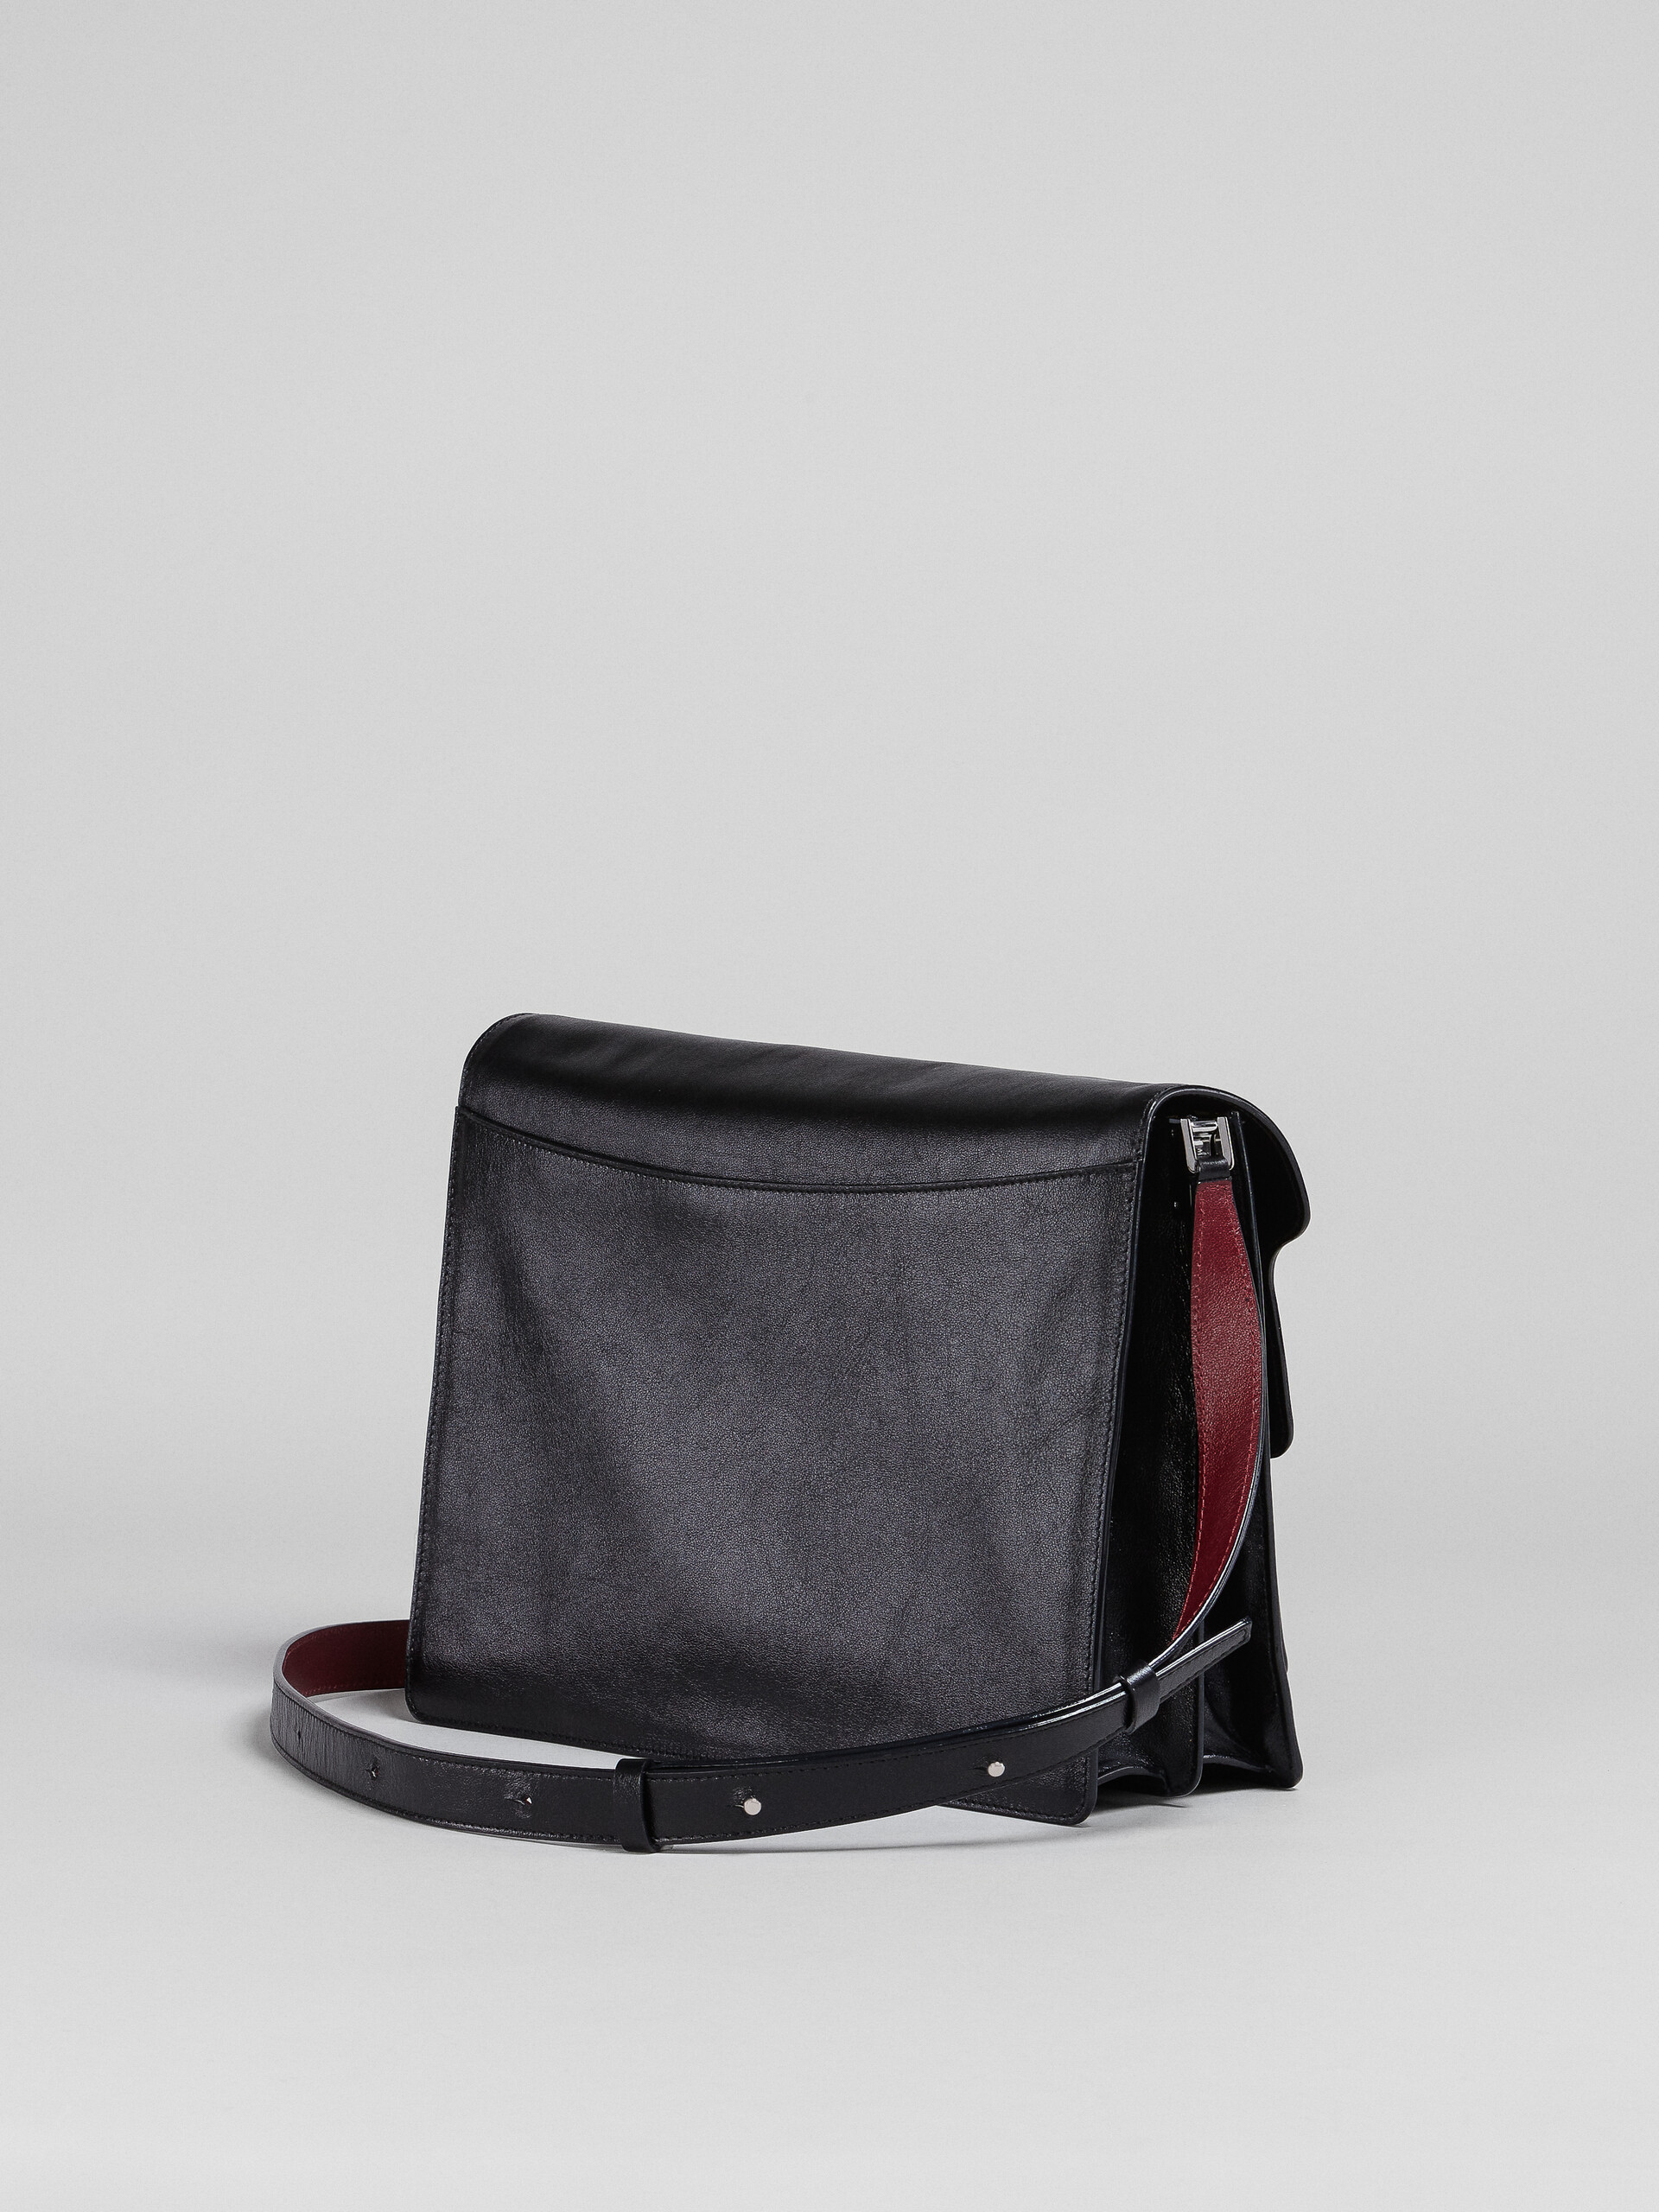 TRUNK SOFT bag in black leather and naif tiger print - Shoulder Bag - Image 3